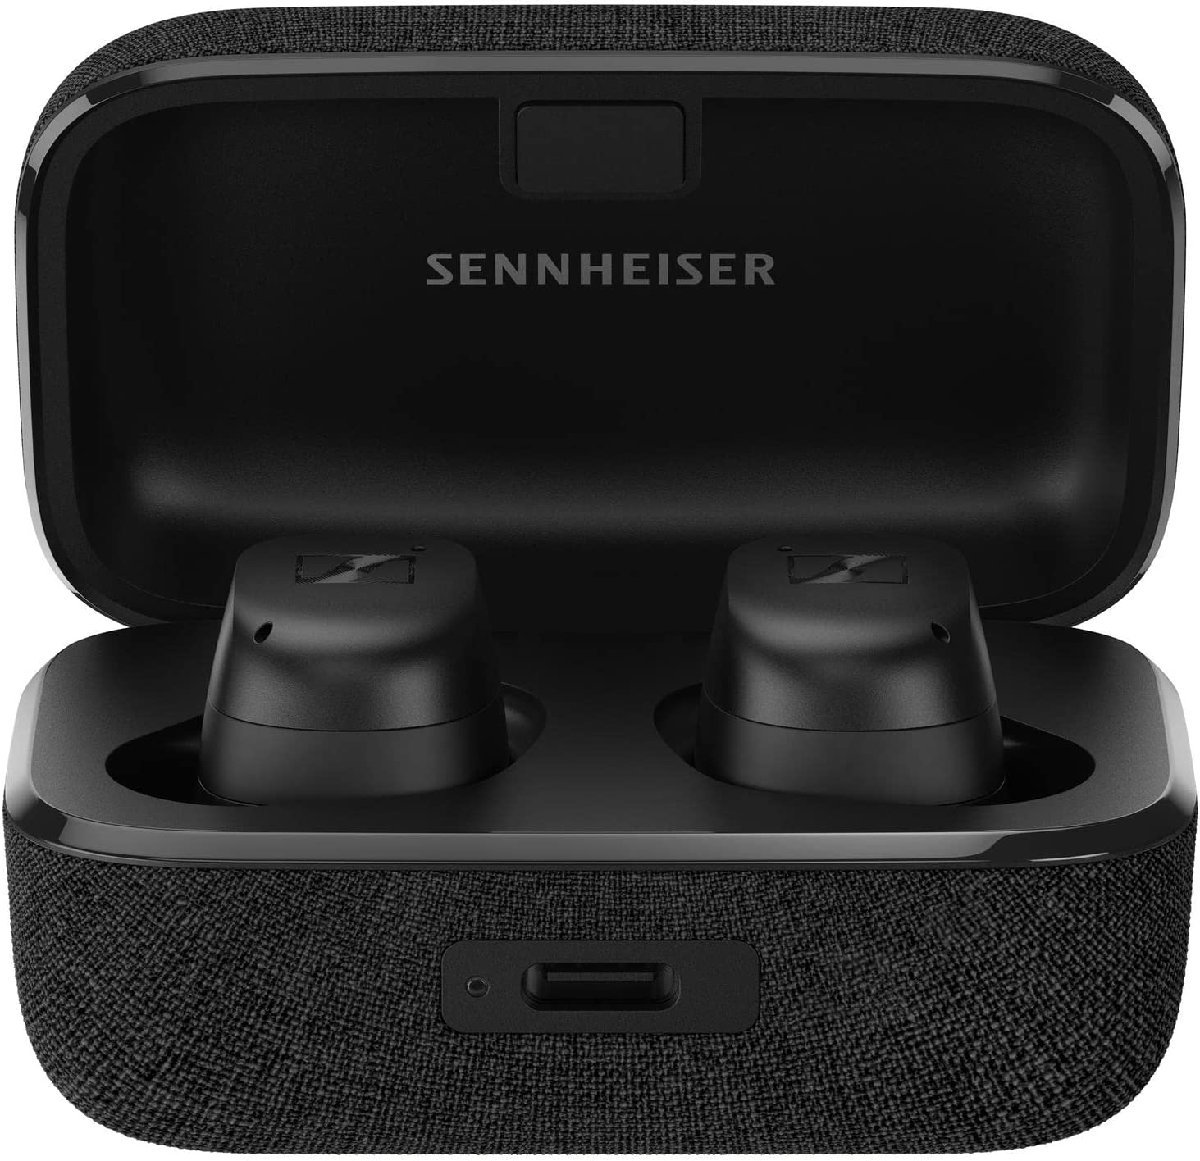  новый товар нераспечатанный Sennheiser Sennheiser беспроводной слуховай аппарат MOMENTUM True Wireless 3 черный шум отмена кольцо MTW3-BLACK гарантия иметь 